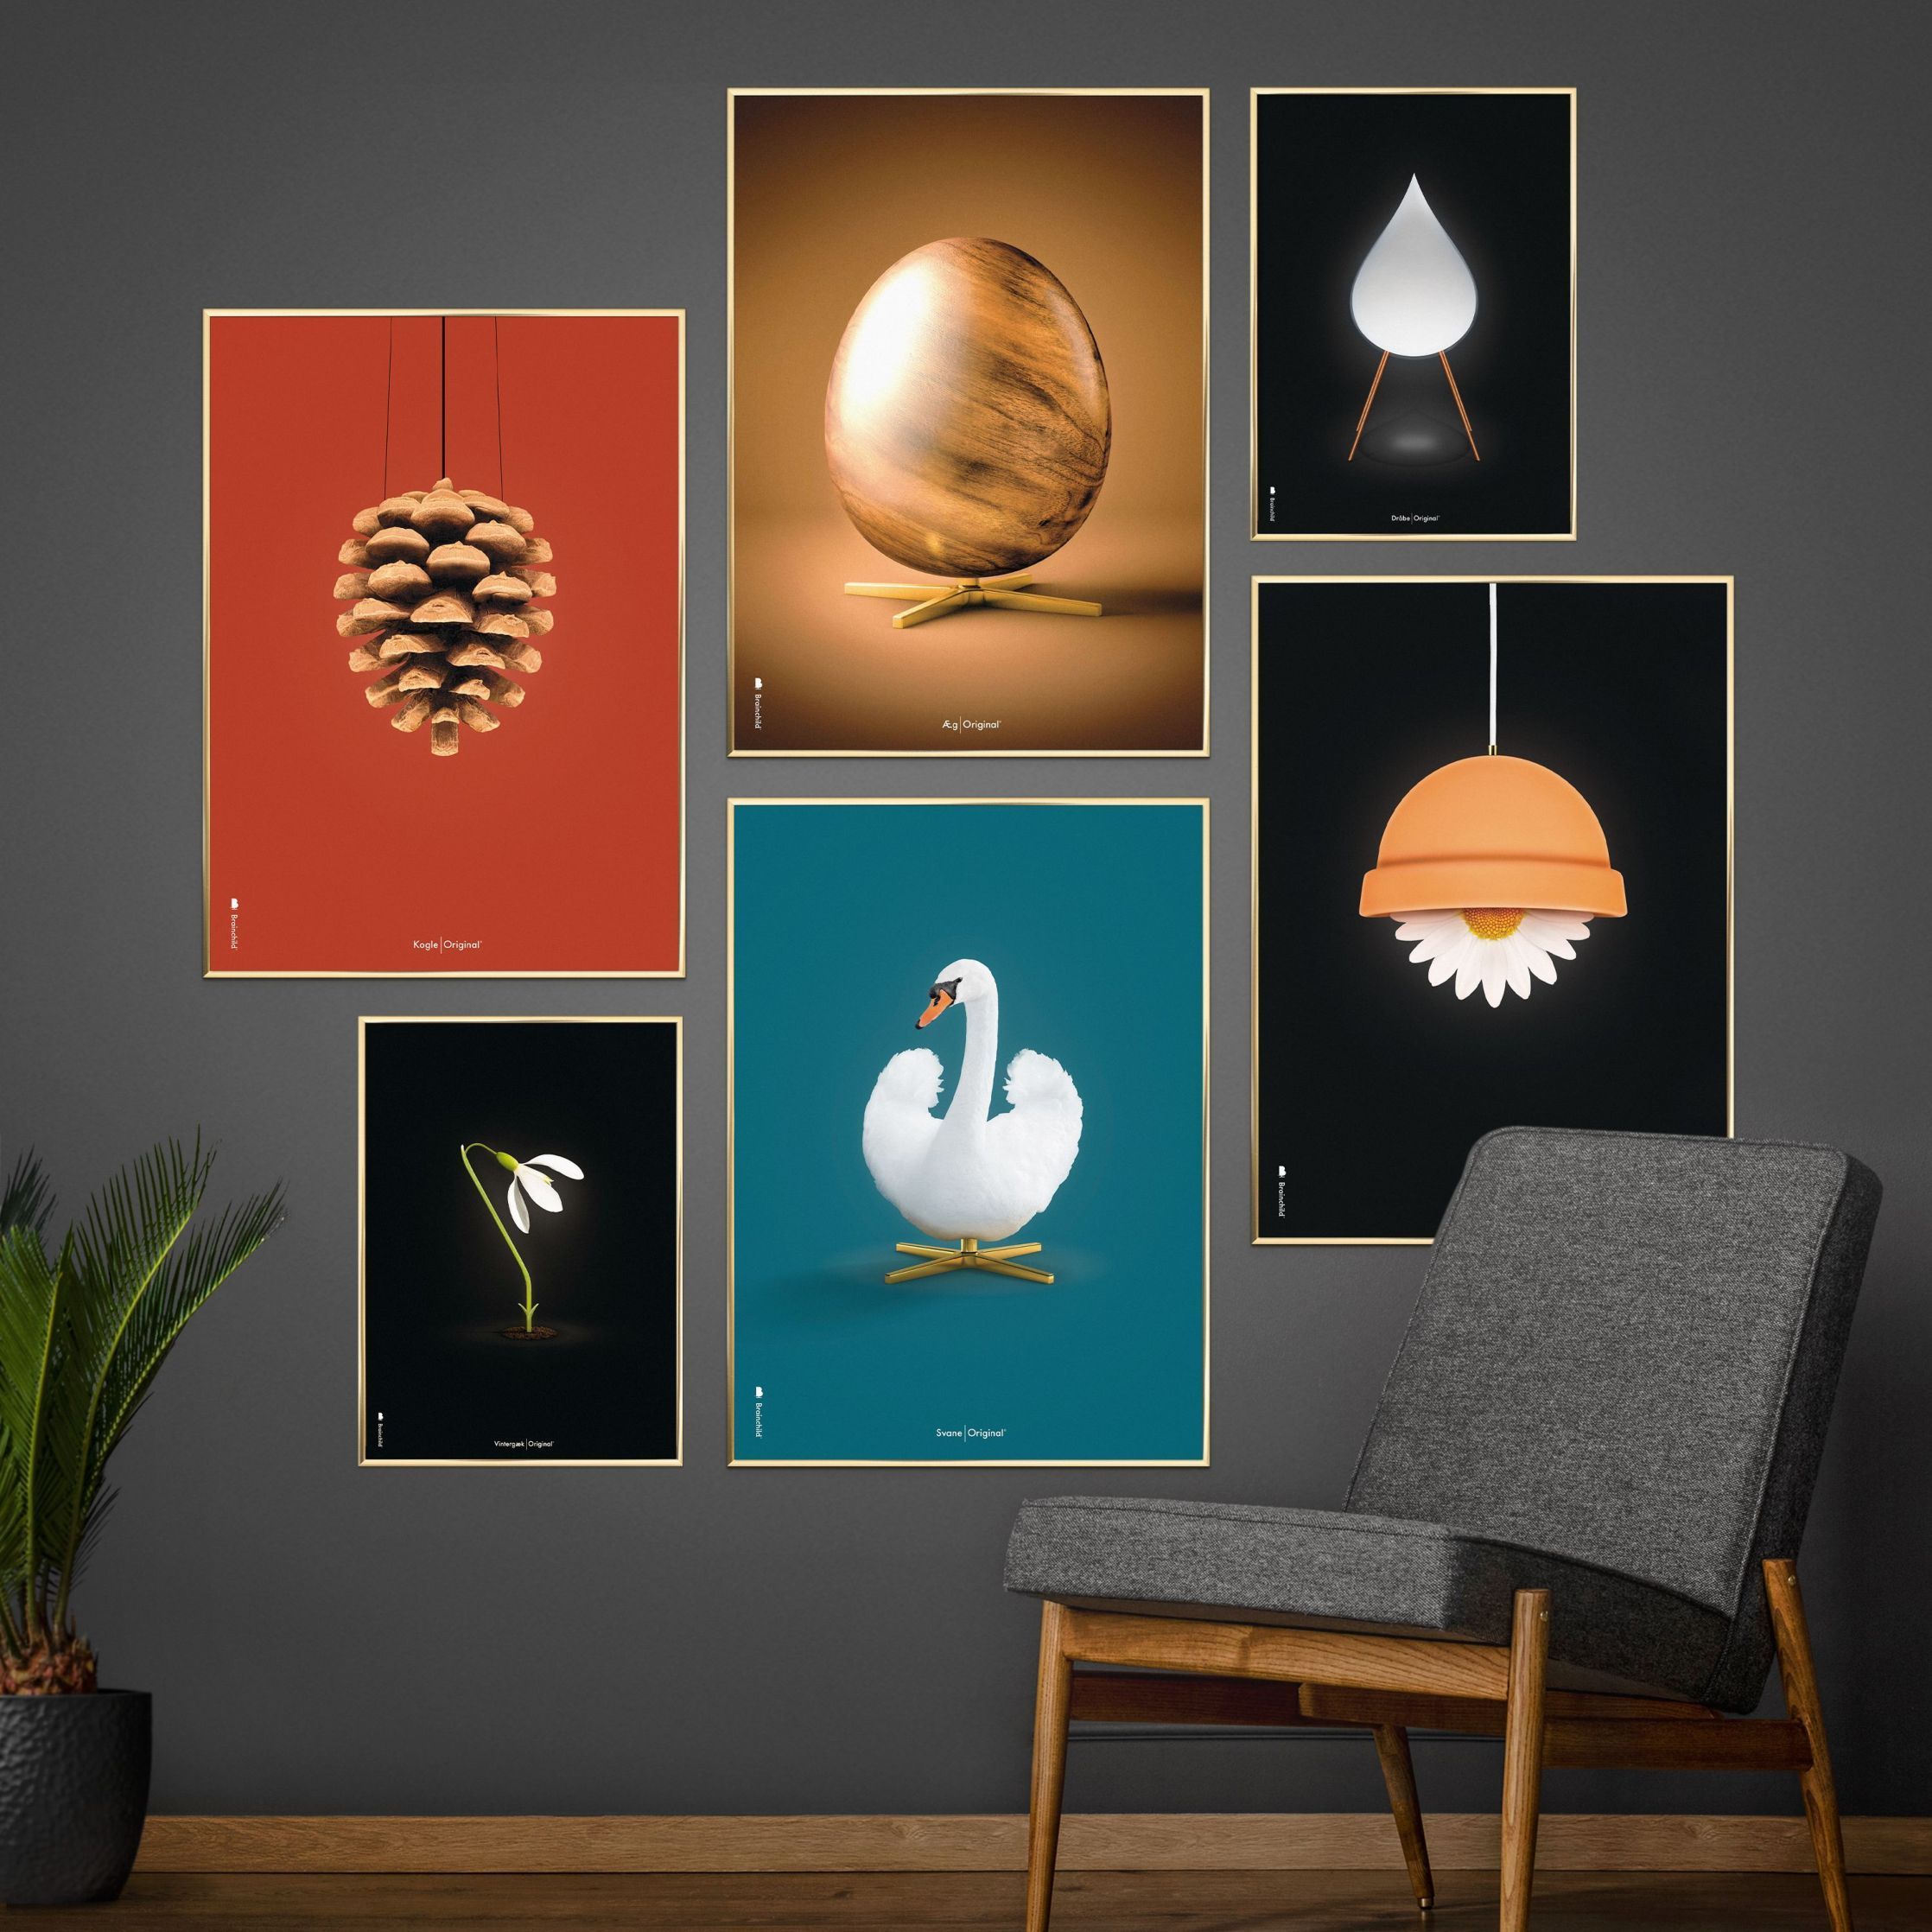 Pomysły Swan Classic Plakat, Light Wood Frame 70 x100 cm, ropopochodne tło